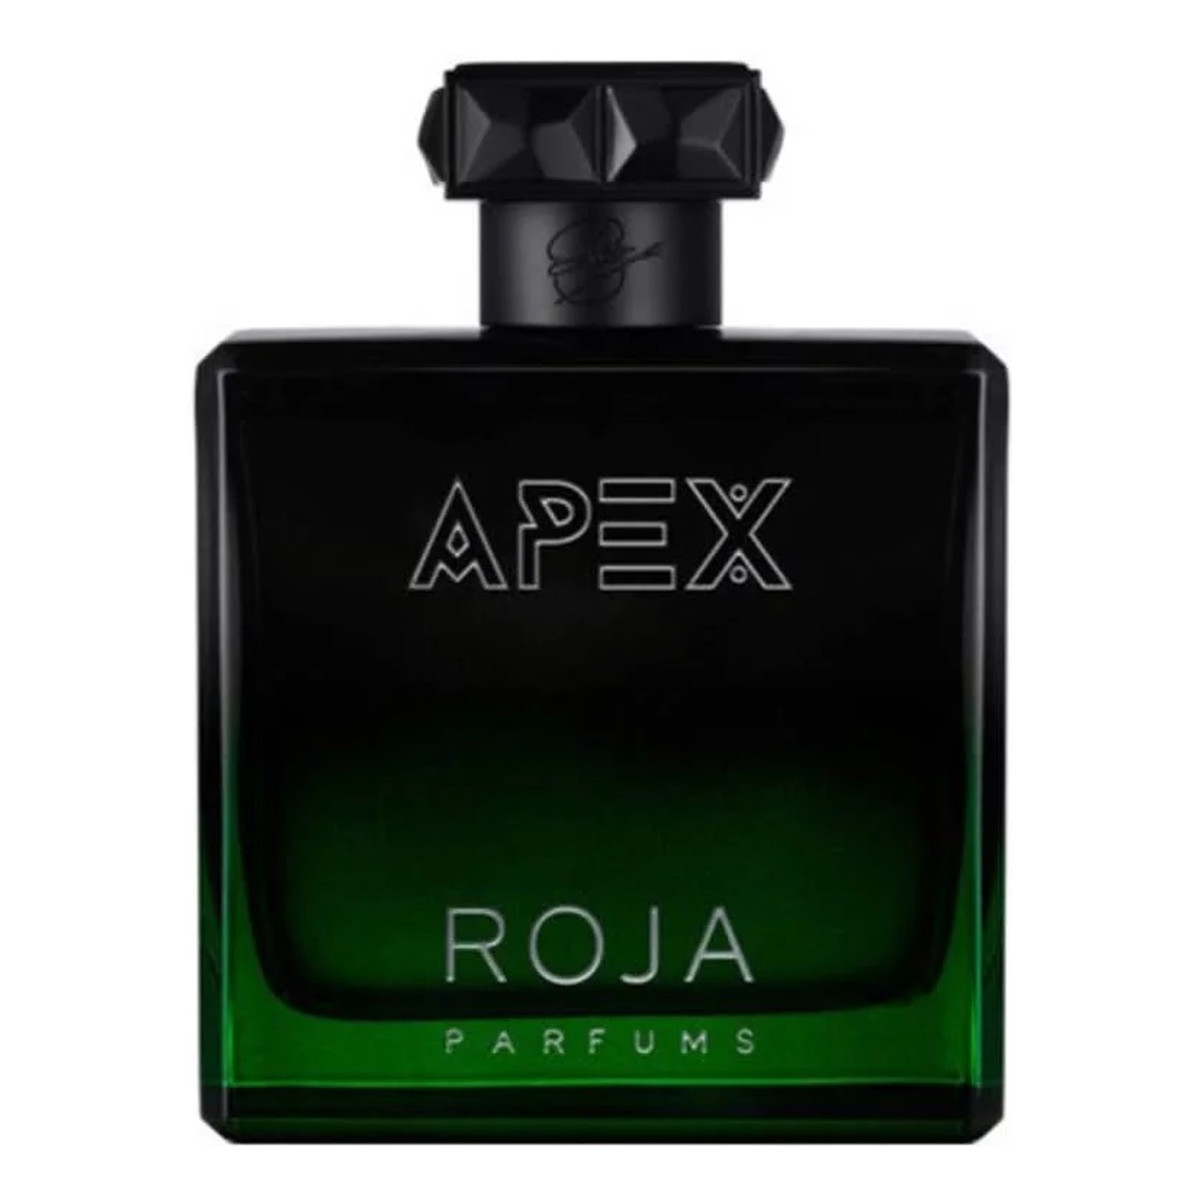 Roja Parfums Apex Woda perfumowana spray 100ml